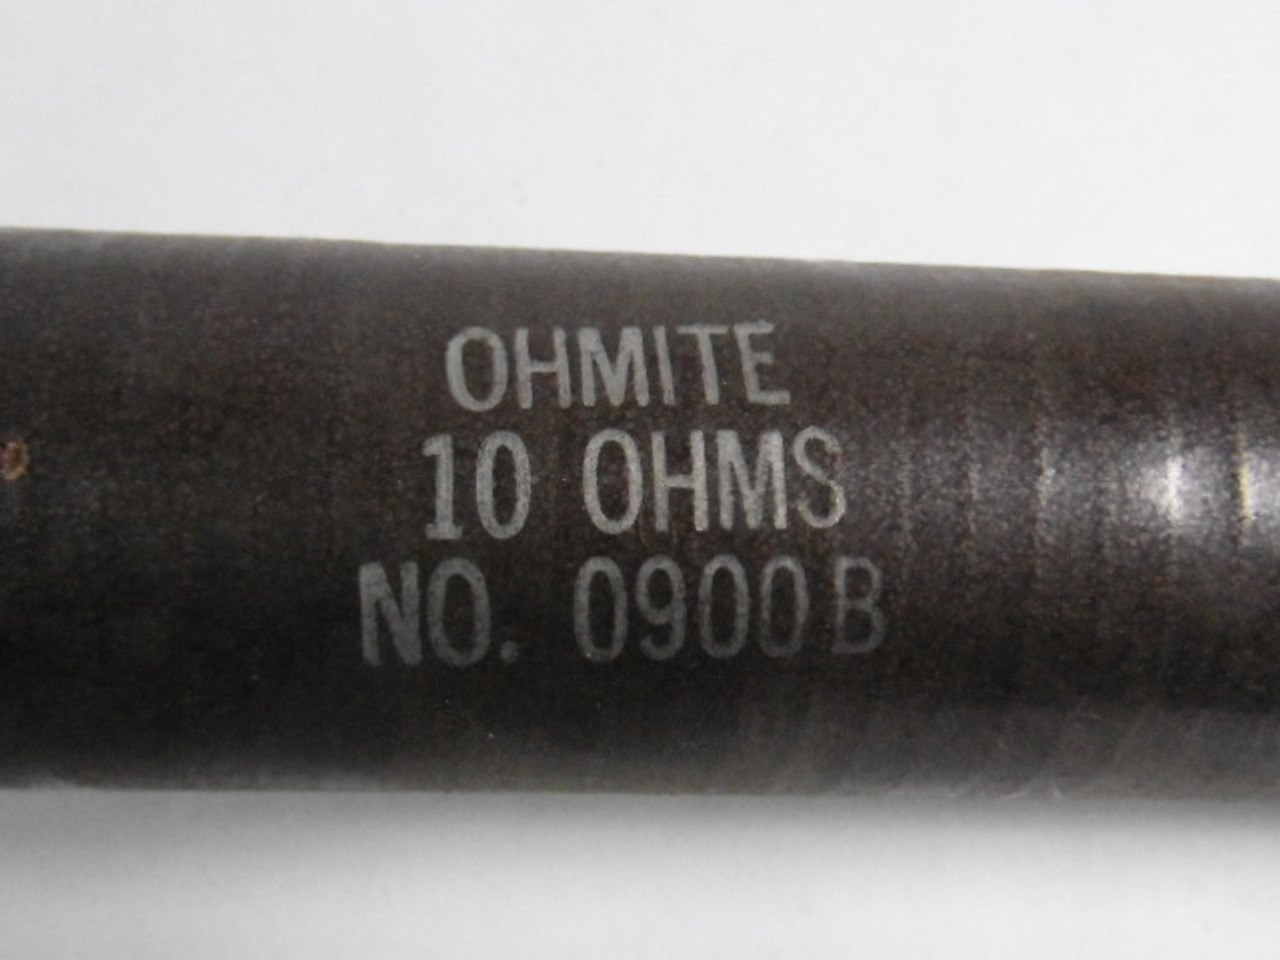 Ohmite 0900B Ceramic Resistor 10 Ohm 225W USED